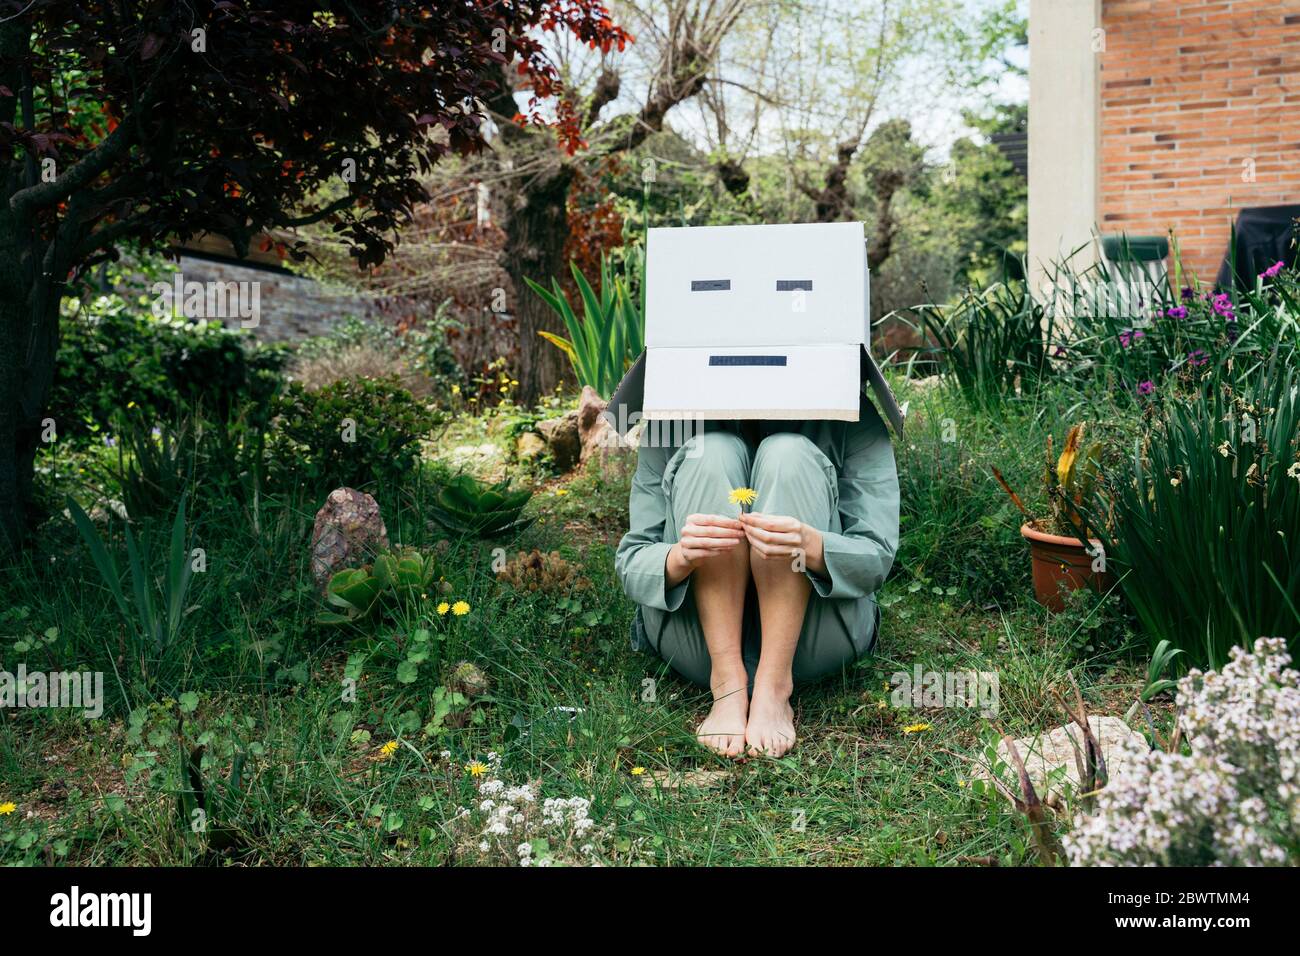 Junge Frau mit Pappkarton auf dem Kopf, barfuß im Garten sitzend Stockfoto